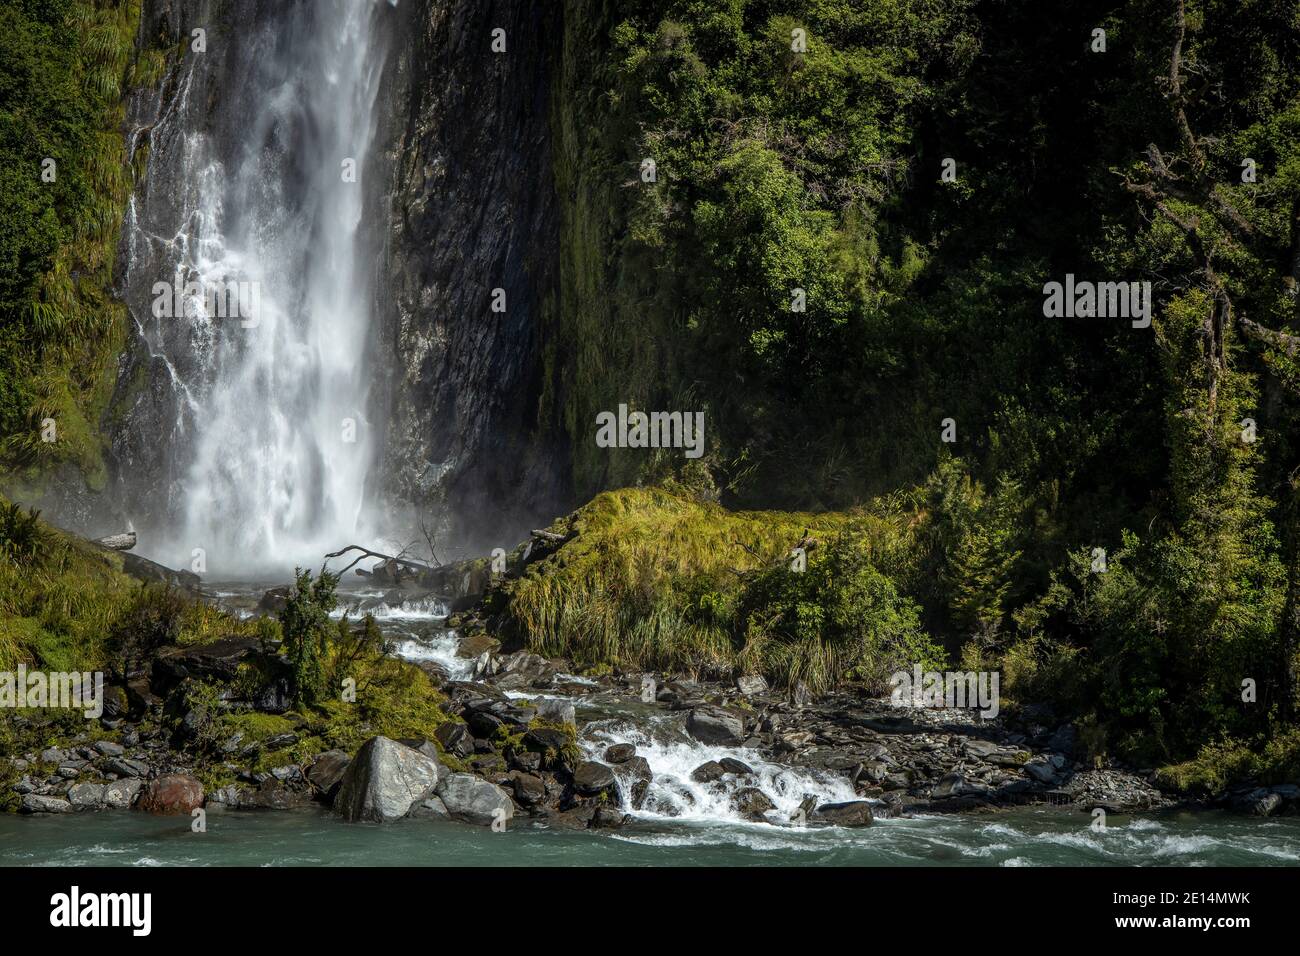 Thunder Creek Falls, Wanaka, New Zealand. Stock Photo